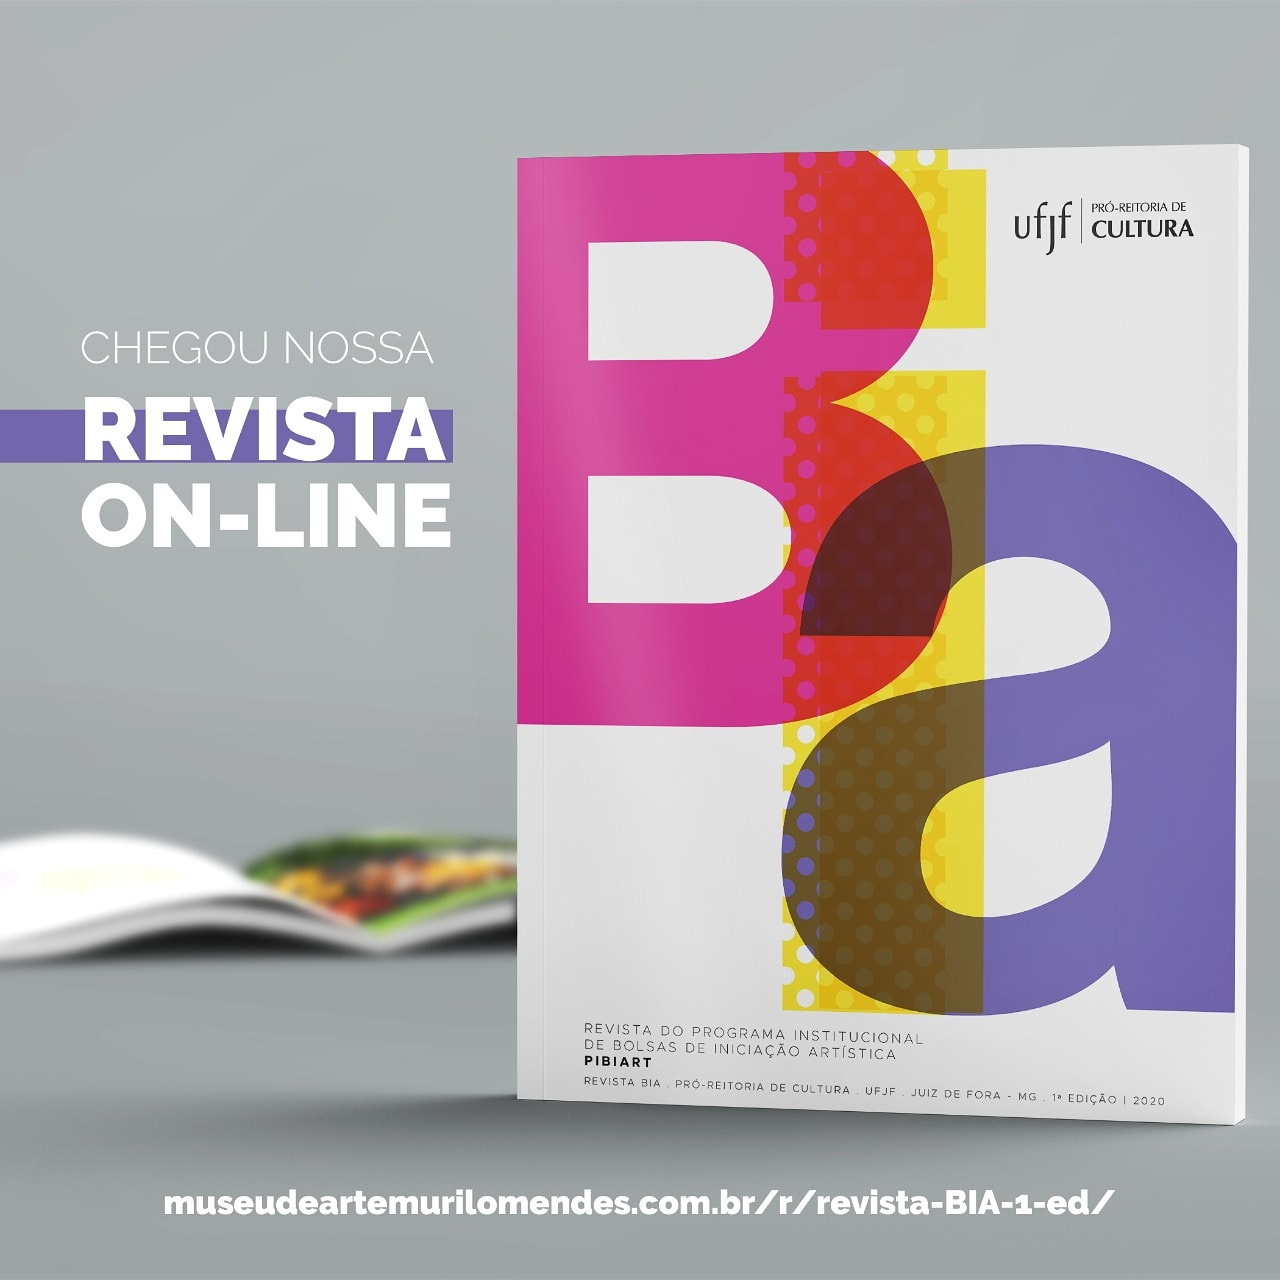 Imagem contendo a capa da revista BIA, uma revista aberta ao fundo, texto dizendo "Chegou nossa revista on-line" e, no rodapé, link para acesso à revista.